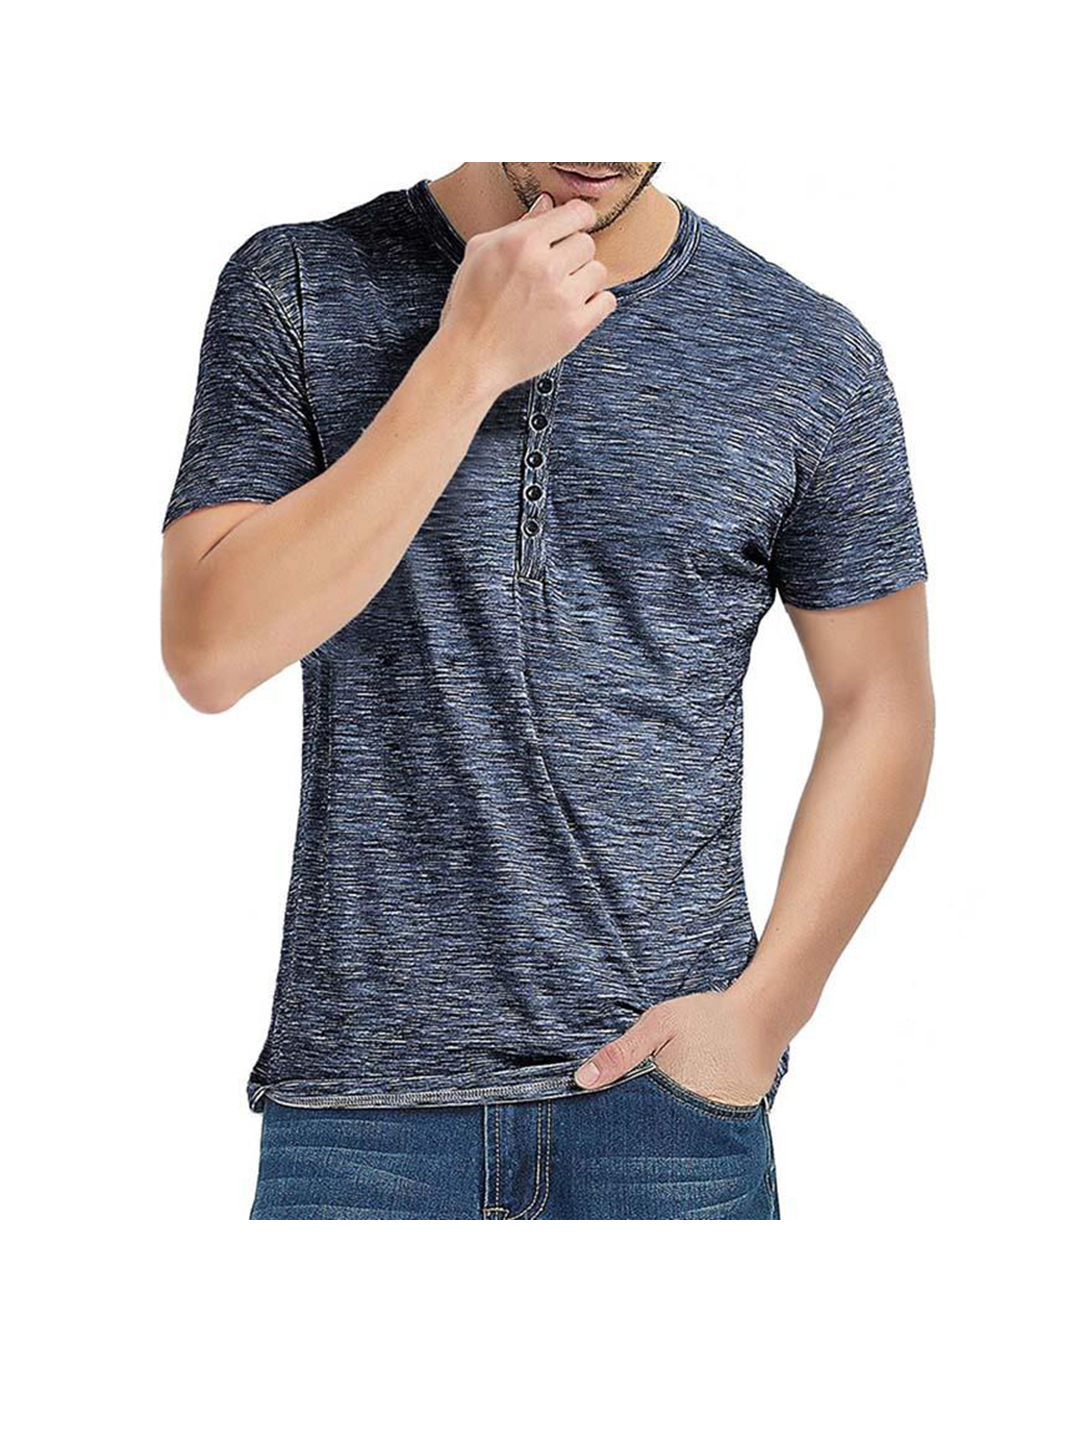 Taylor Jacquard Short-sleeved Casual T-shirt